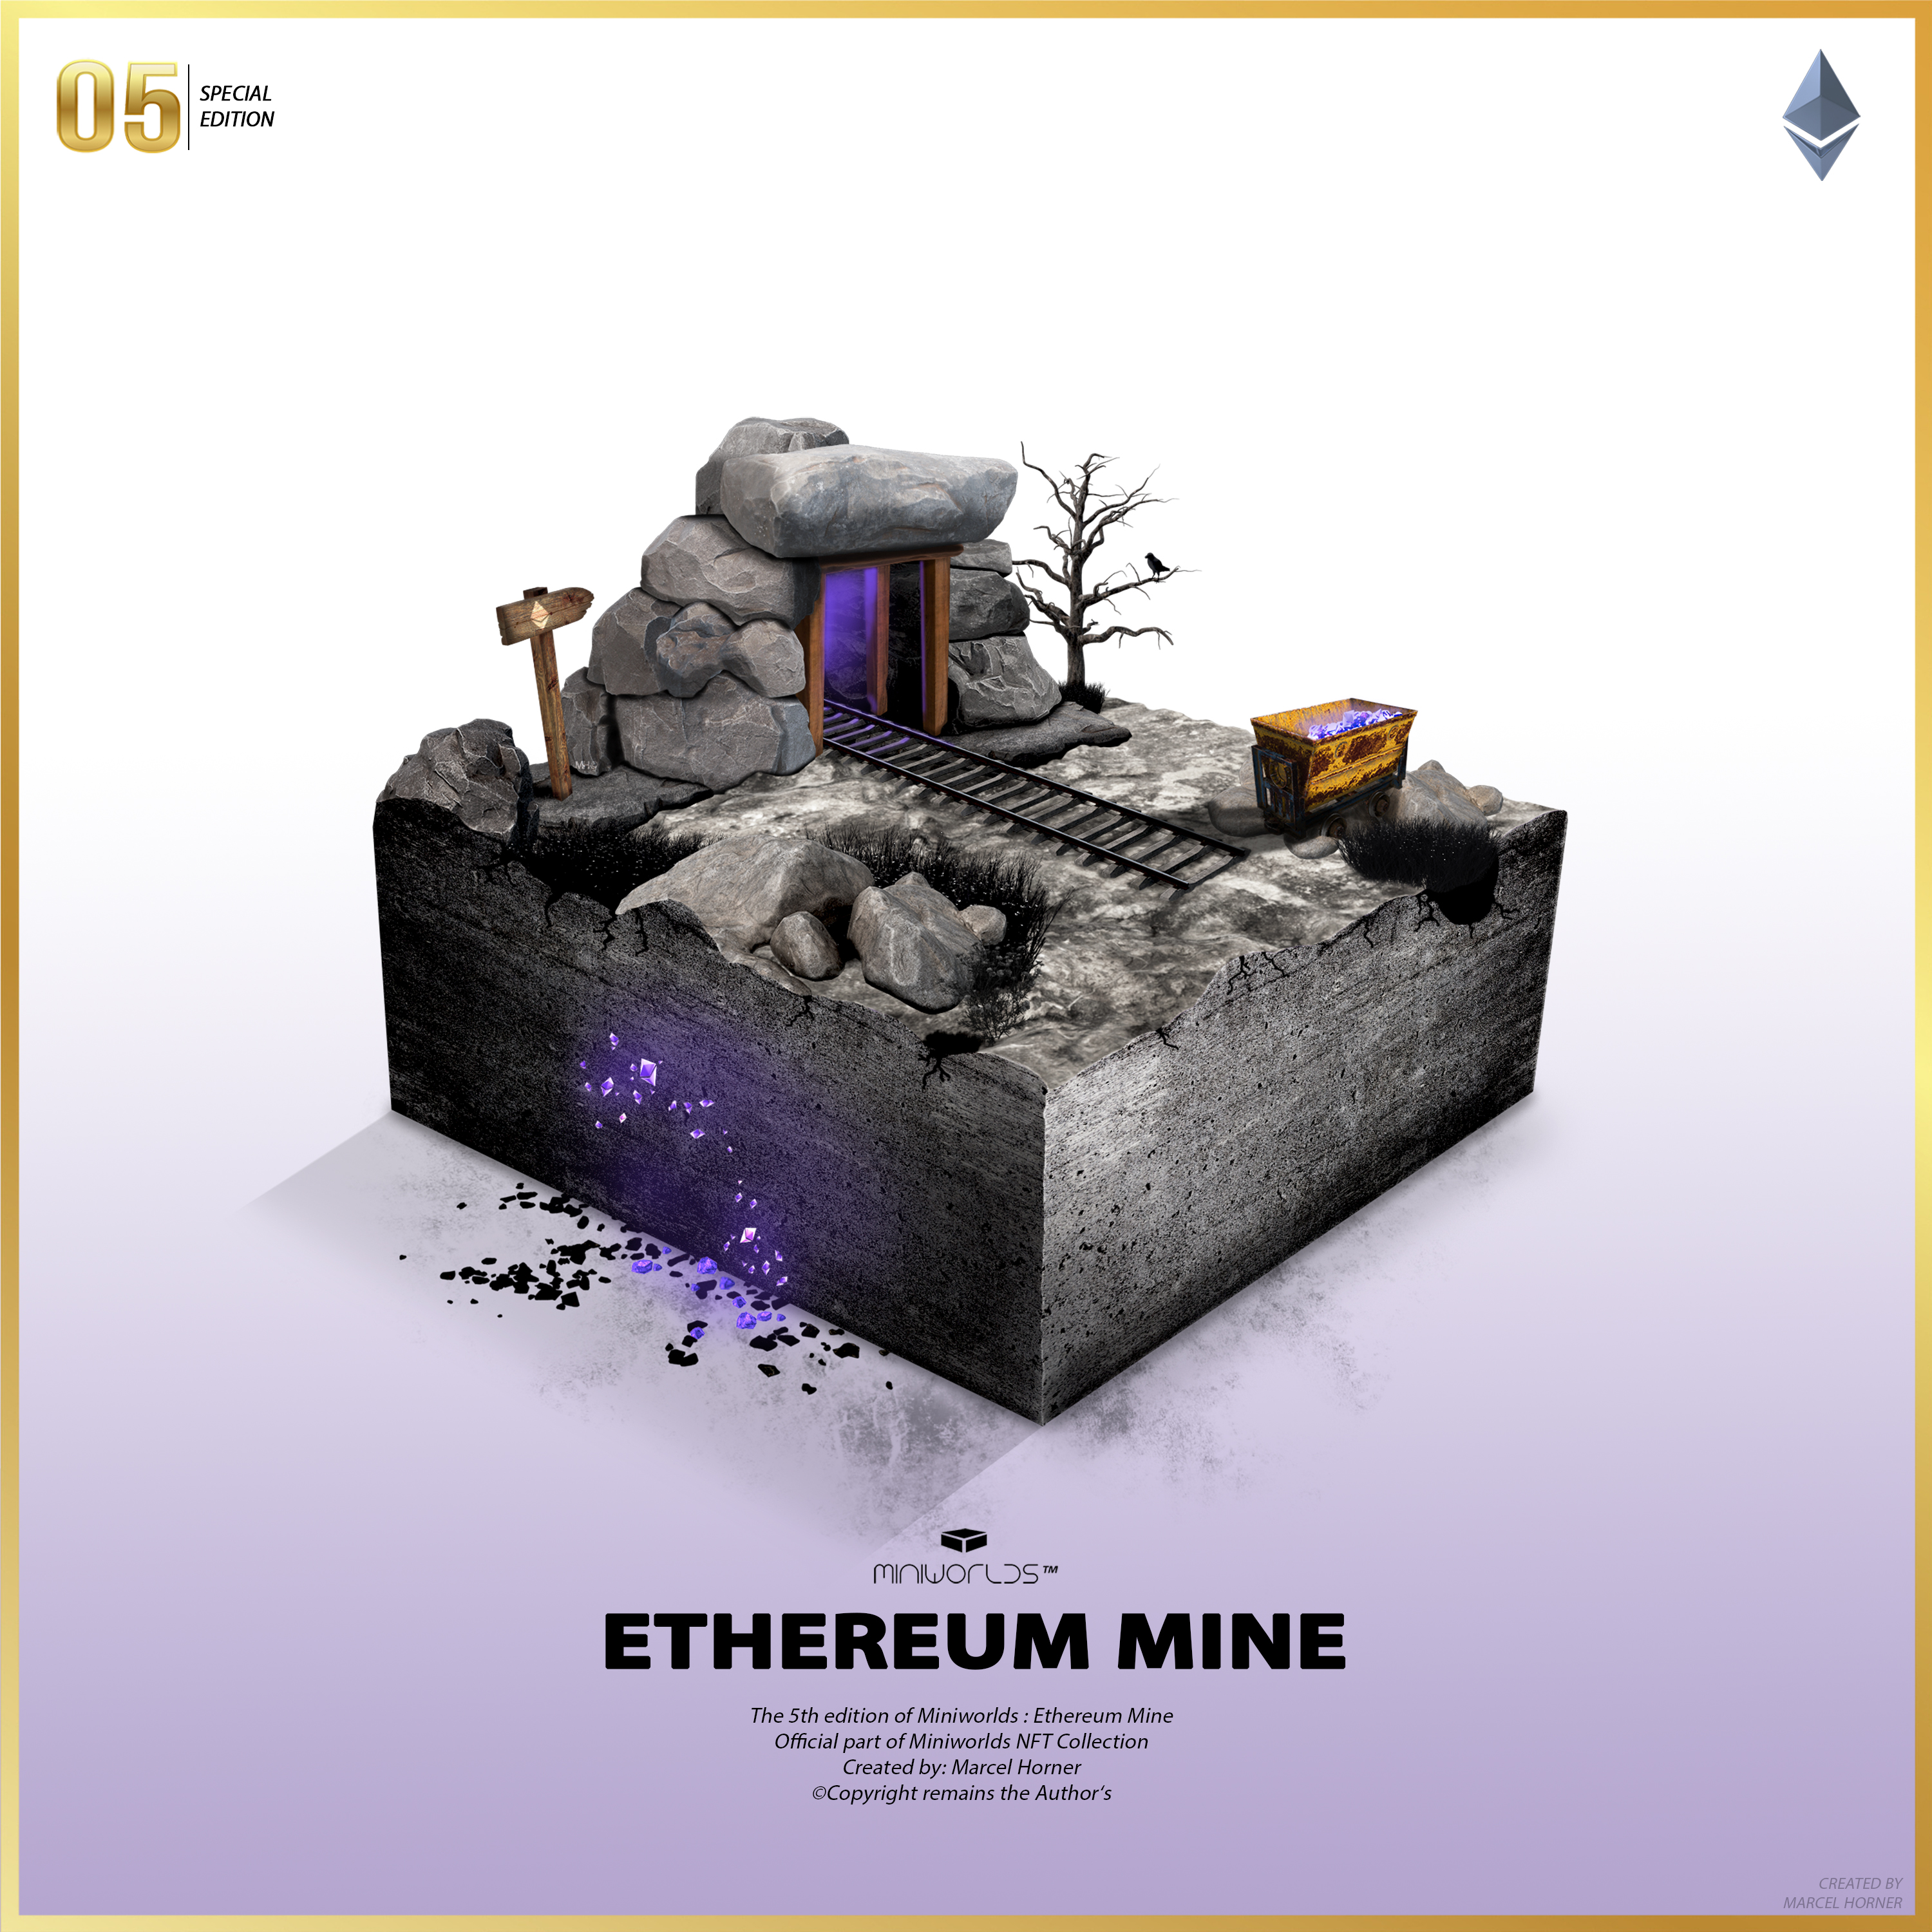 Miniworlds: Ethereum Mine #05